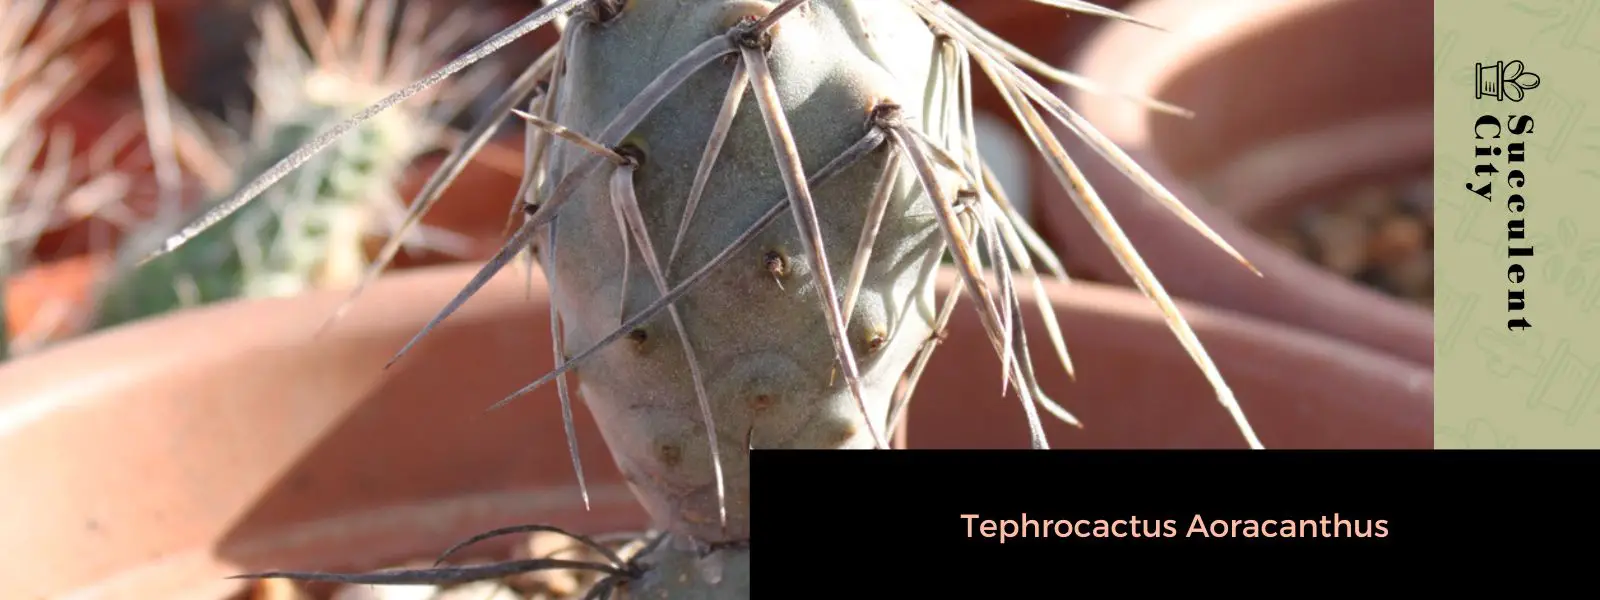 Tephrocactus Aoracanthus (El cactus piña)